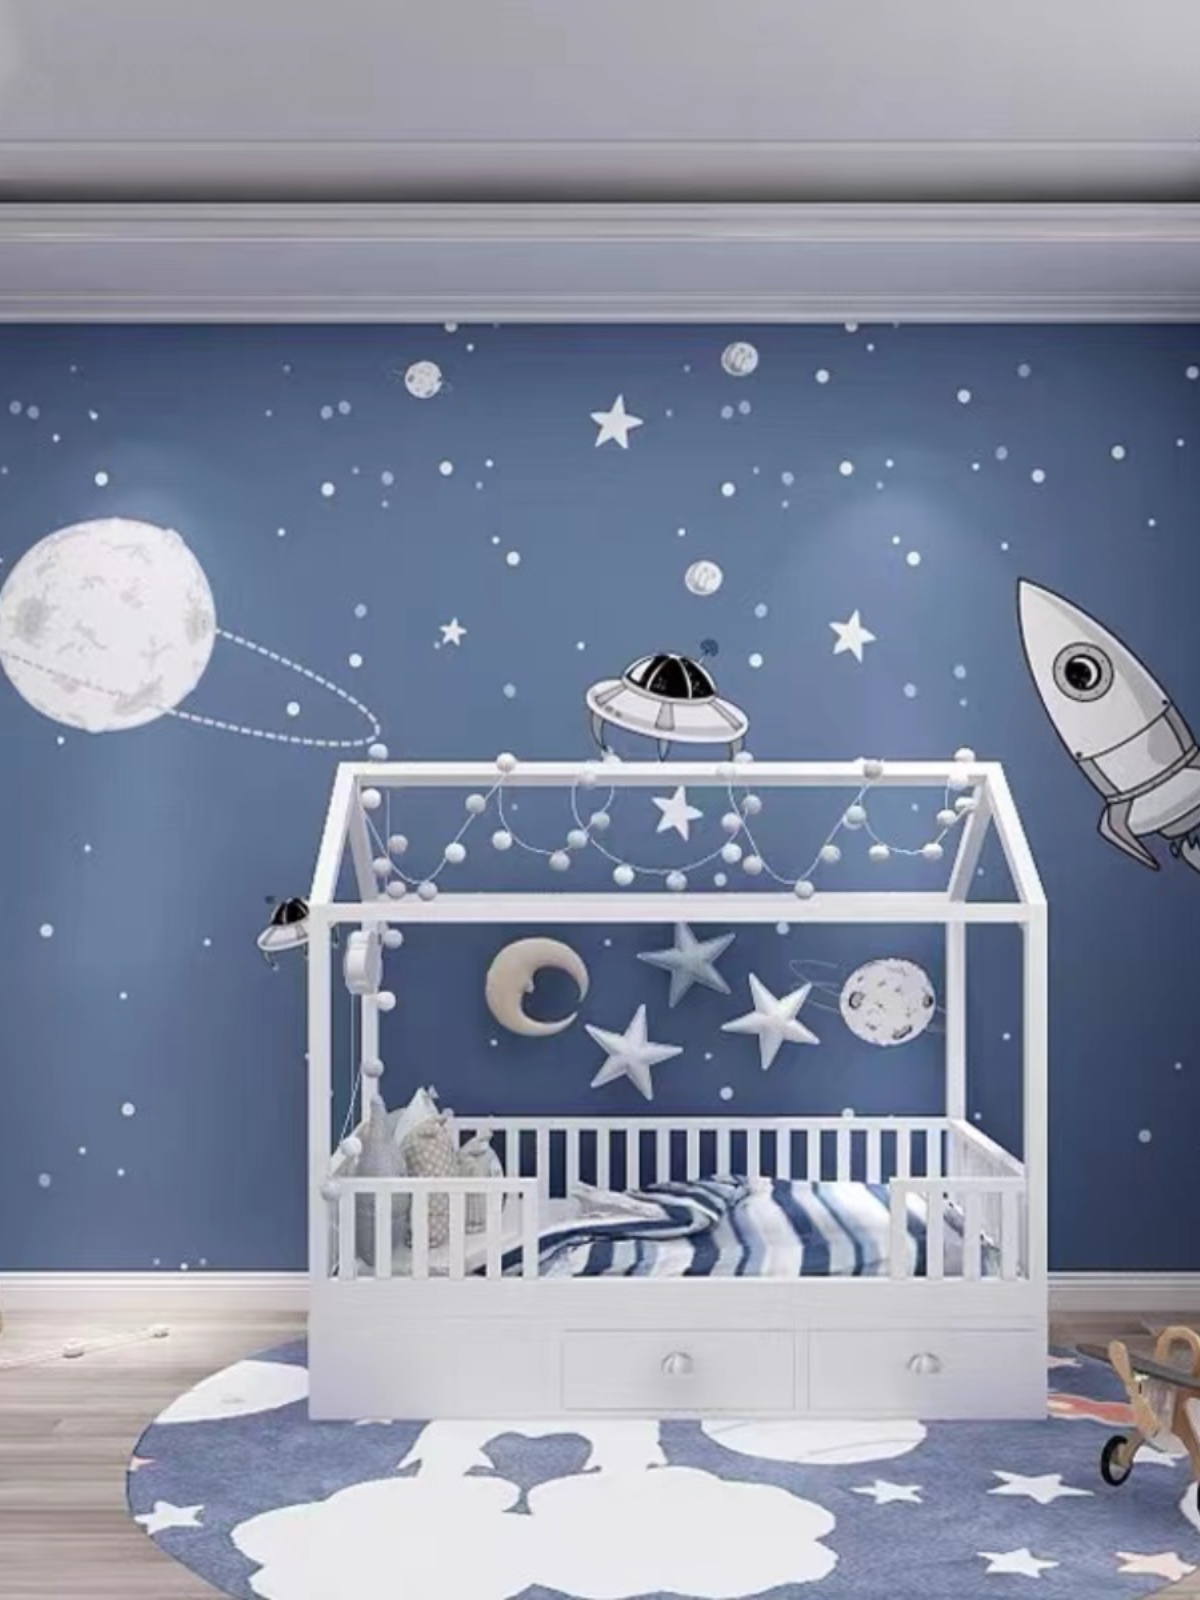 卧室壁布浅蓝色卡通宇宙星空墙纸男孩儿童房床头墙布装饰定制壁画